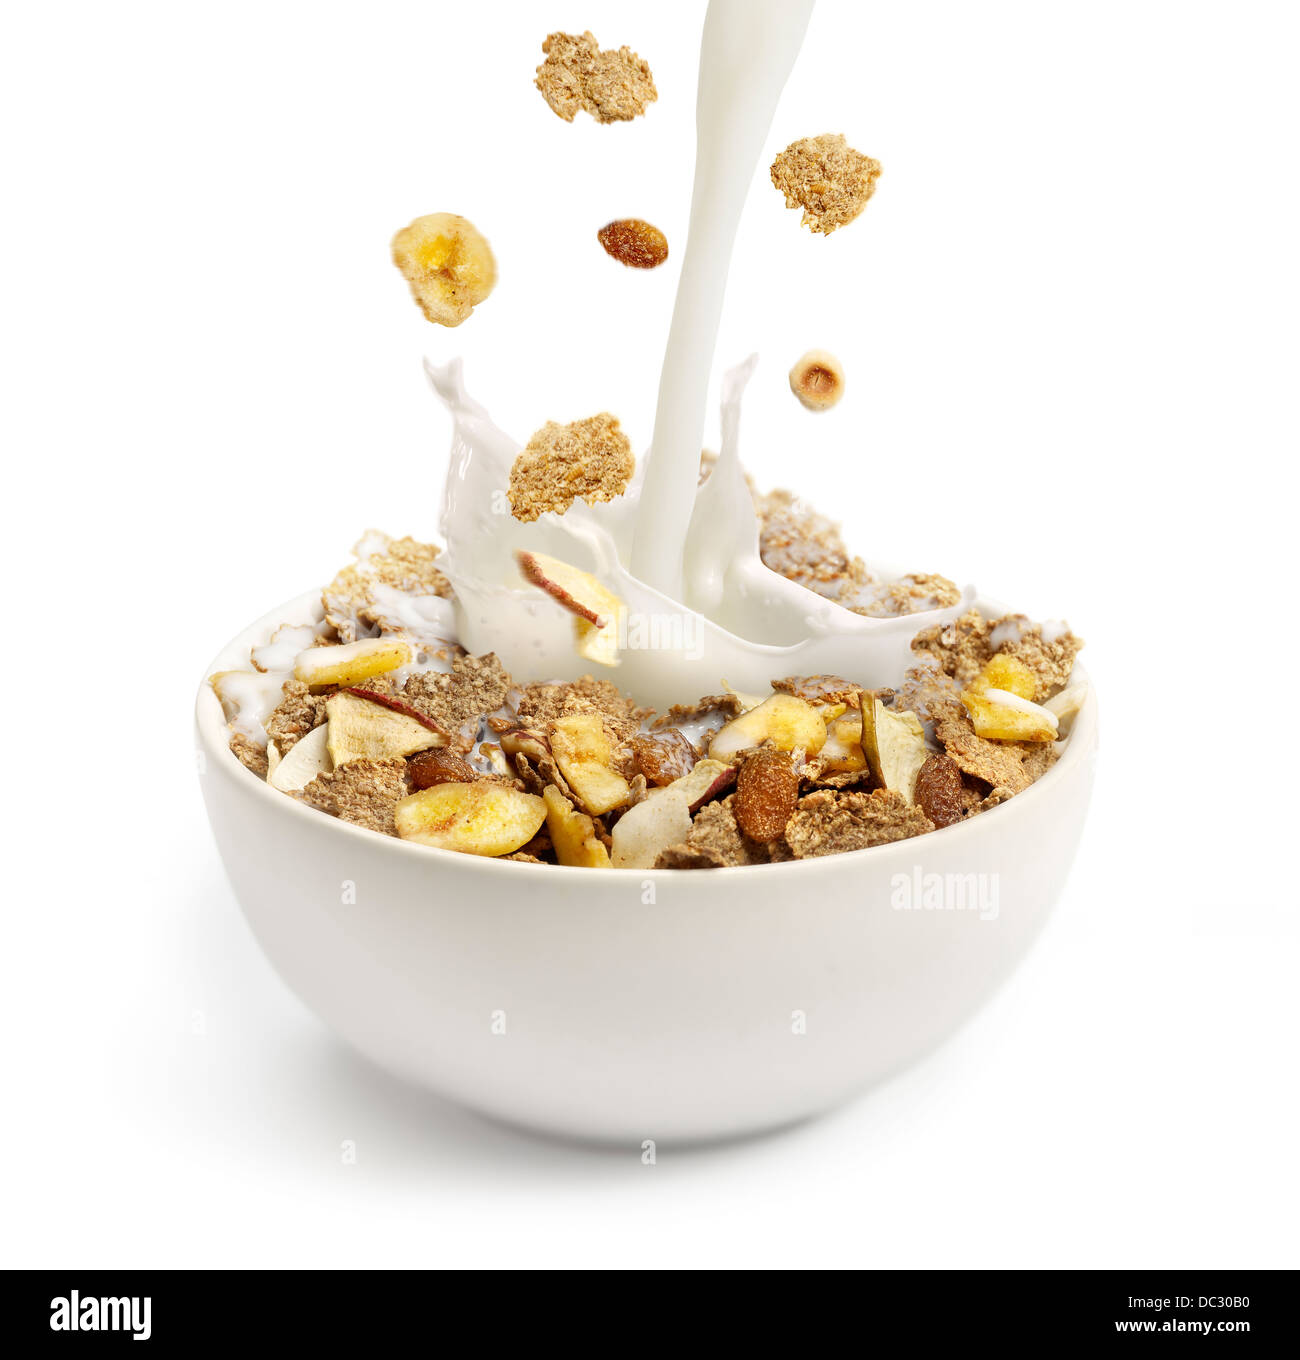 Verter la leche en un tazón de cereales para el desayuno Foto de stock